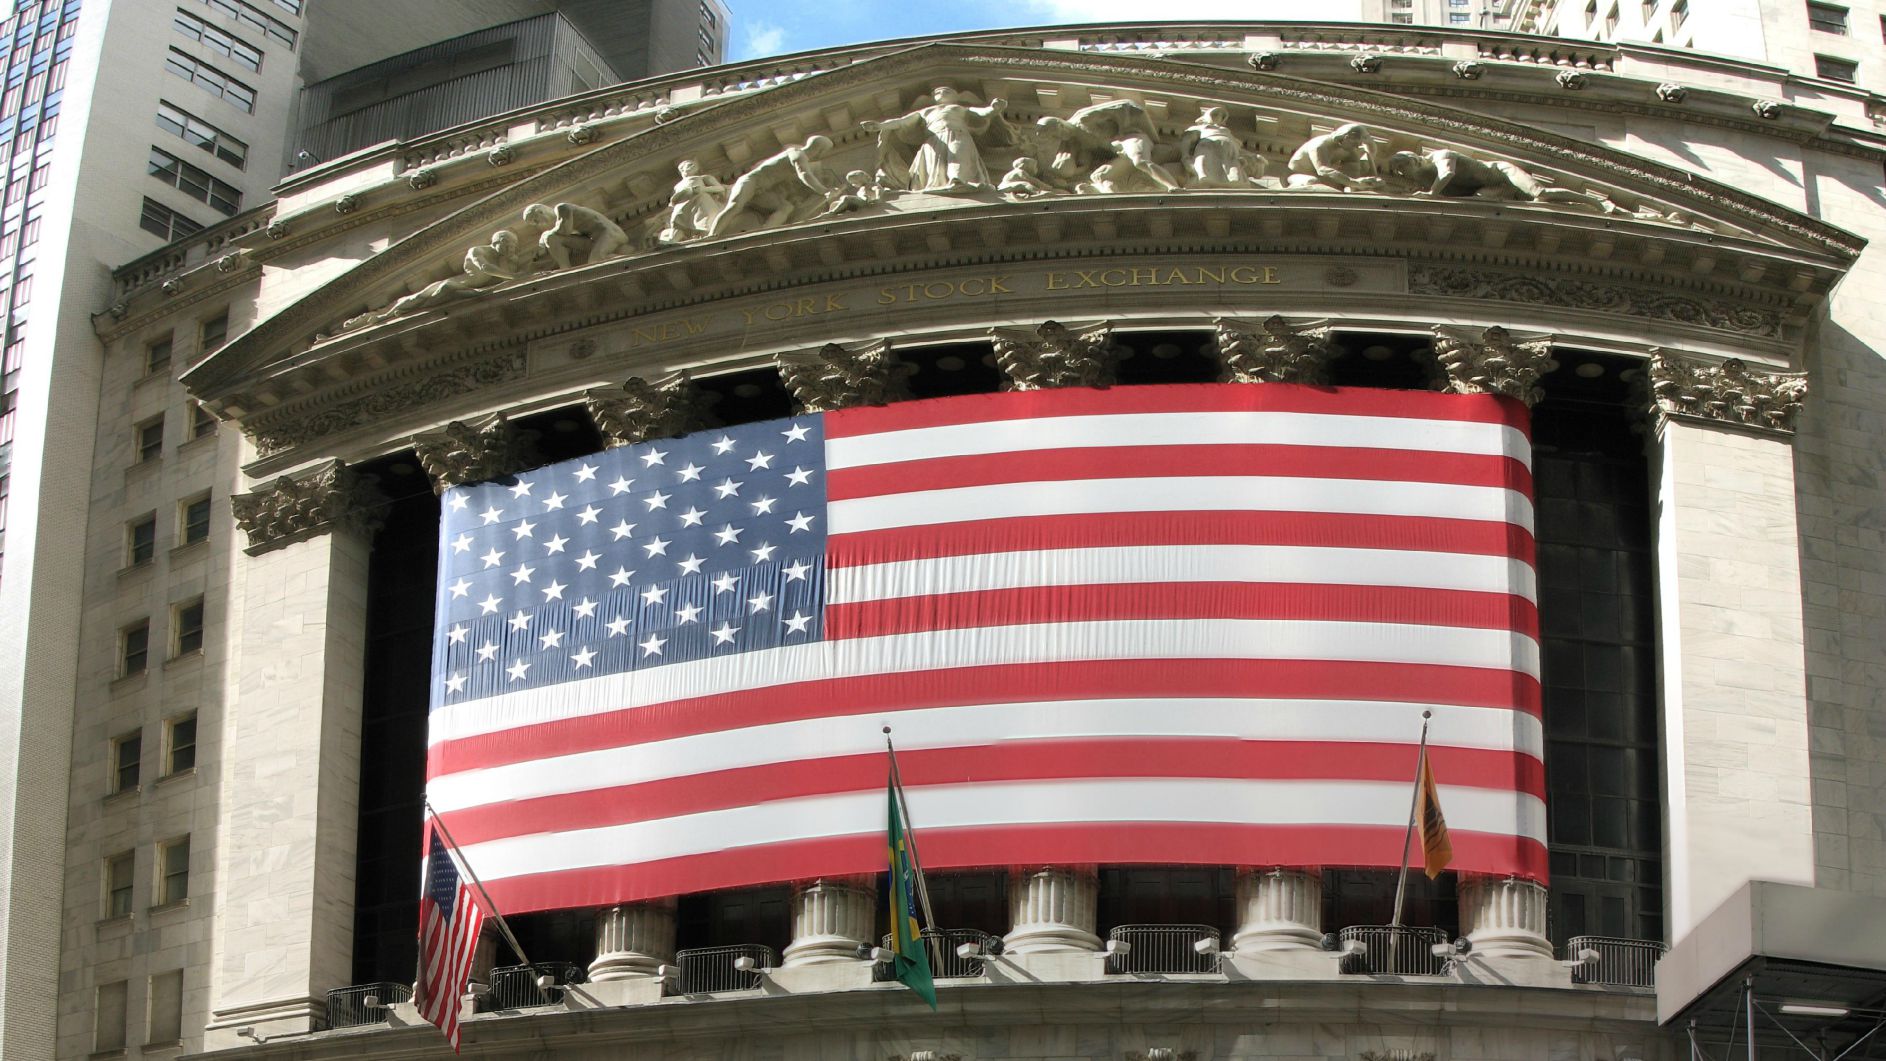 La bourse de New York propose des investissements "catholiques" (Photo:Michael Daddino/Flickr/CC BY 2.0)